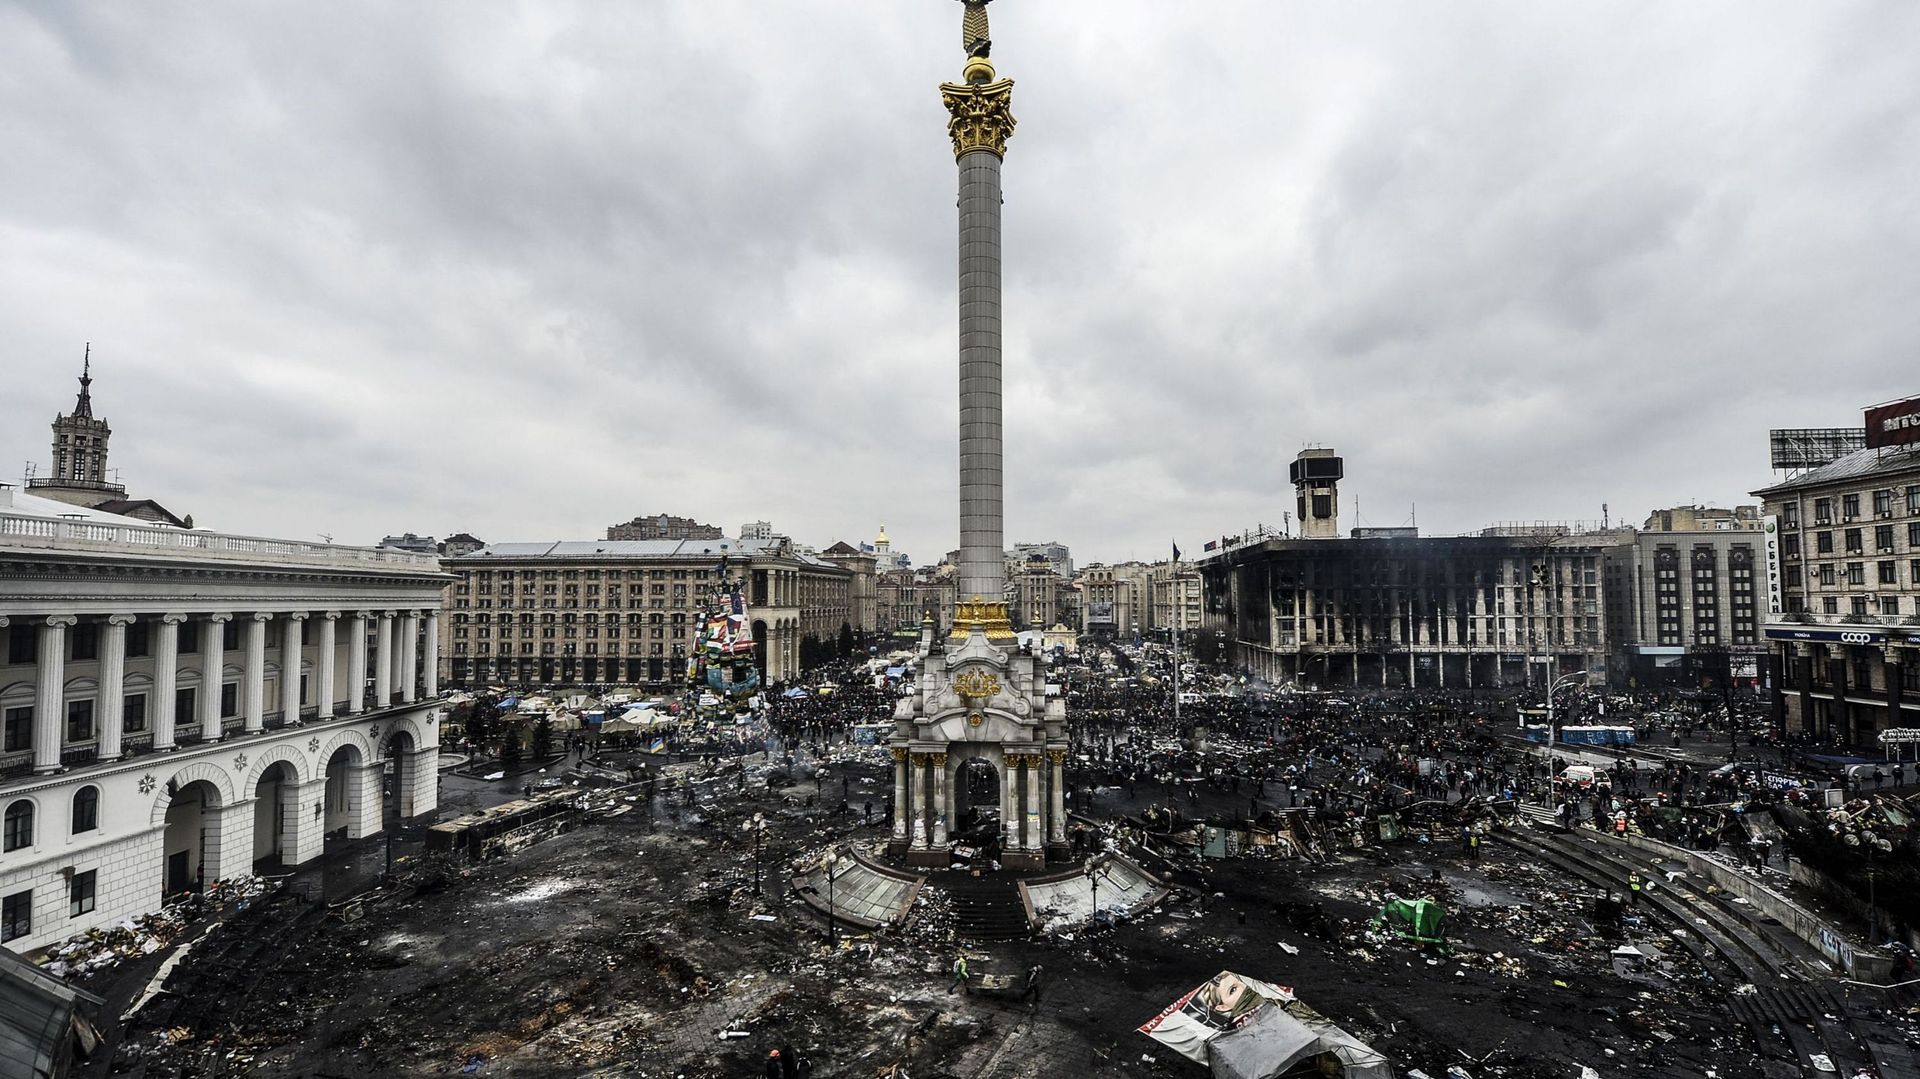 La place de l'Indépendance de Kiev dévastée par les affrontements entre manifestants ukrainiens et forces de l'ordre